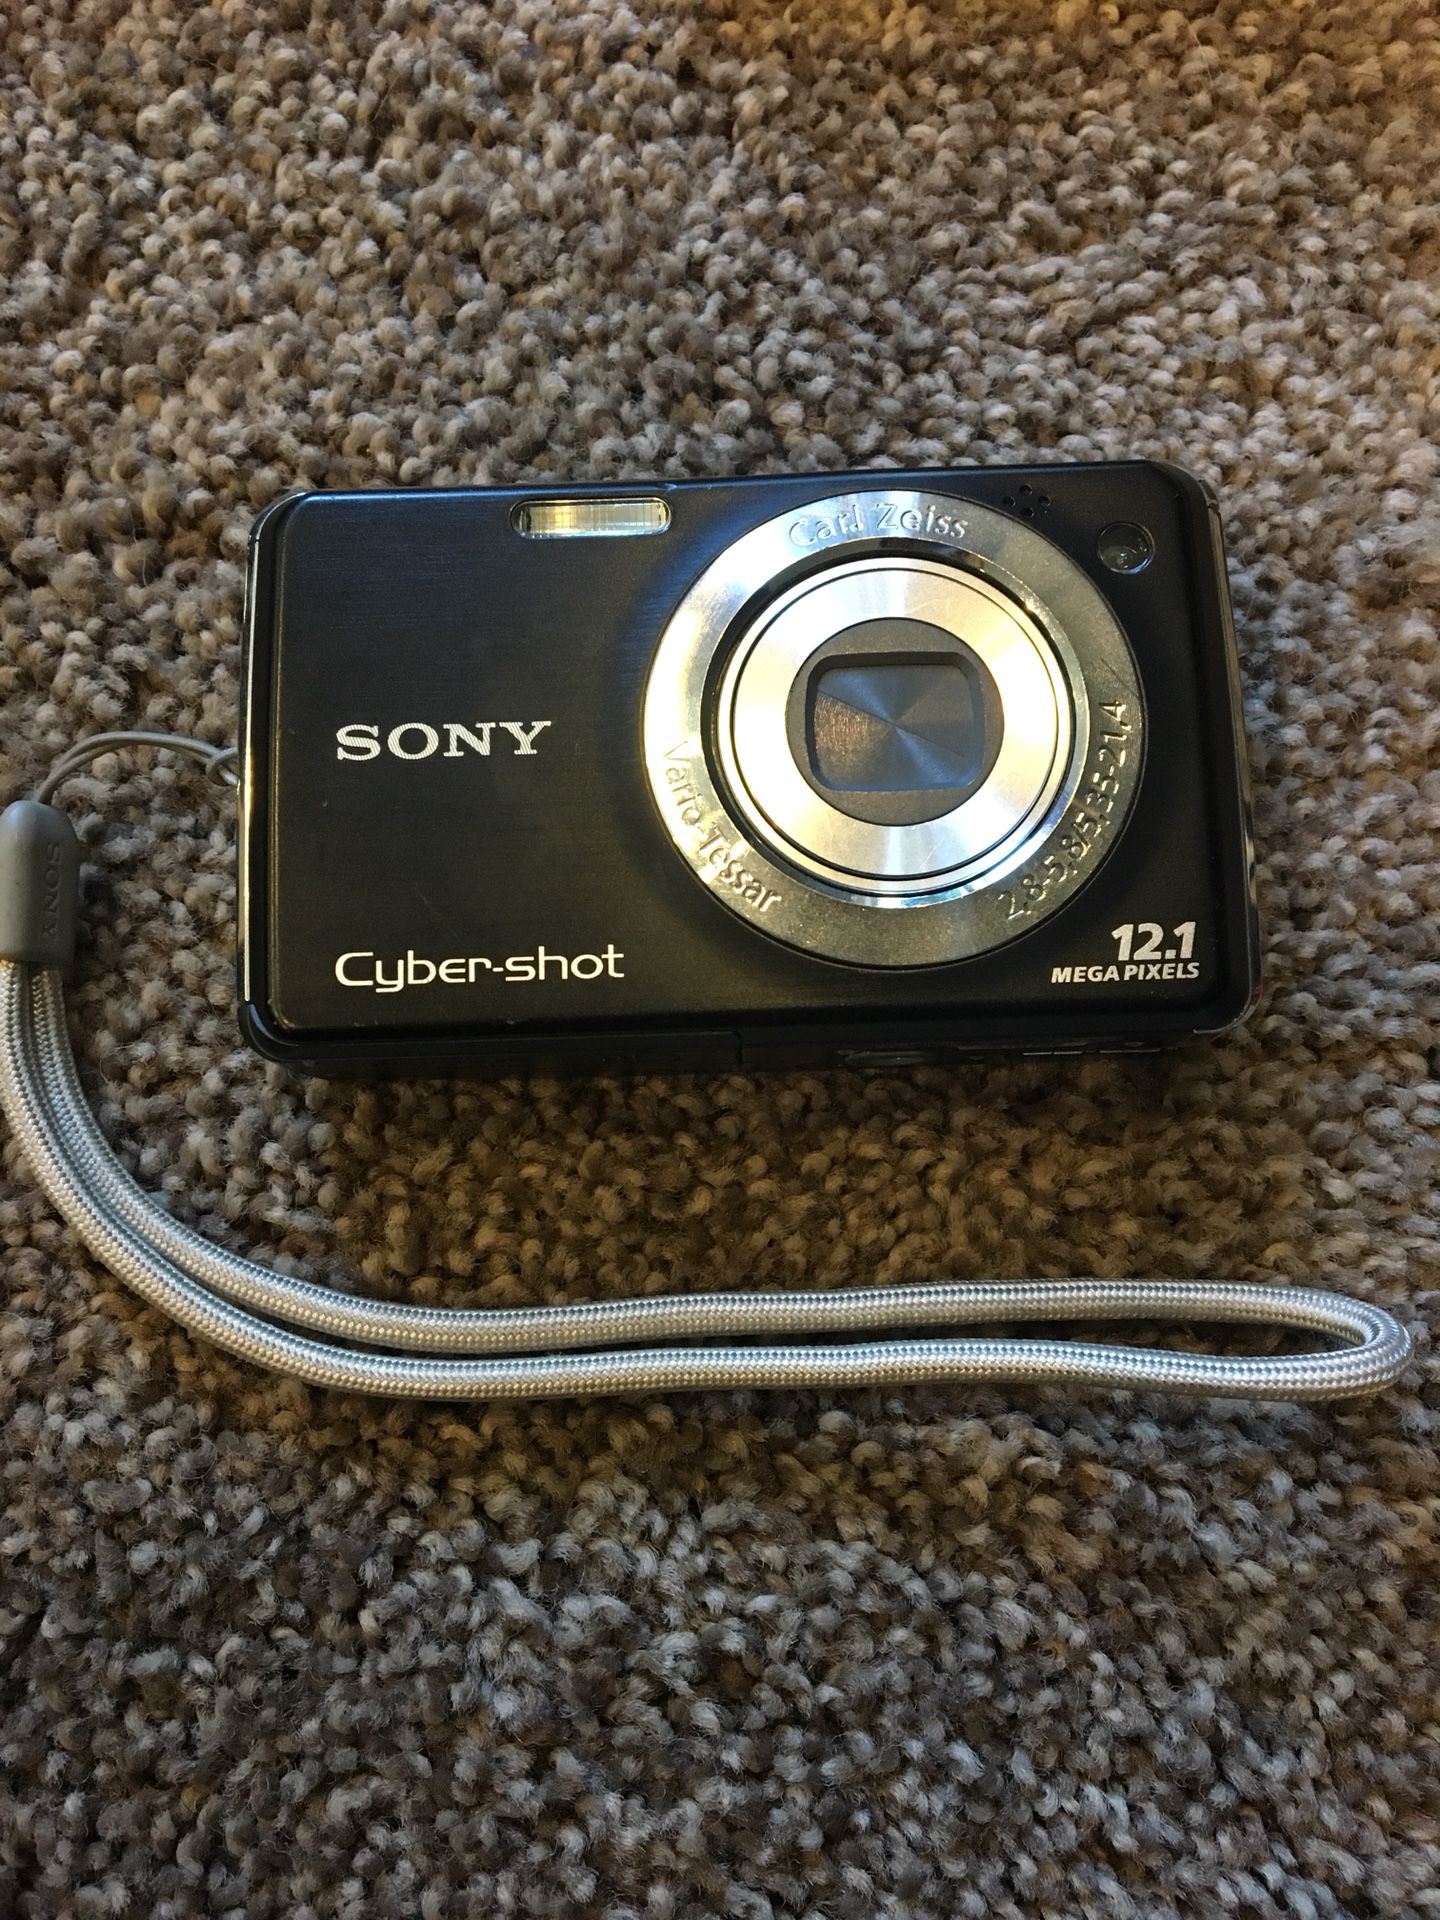 Sony Vario-Tessar 12MP digital camera